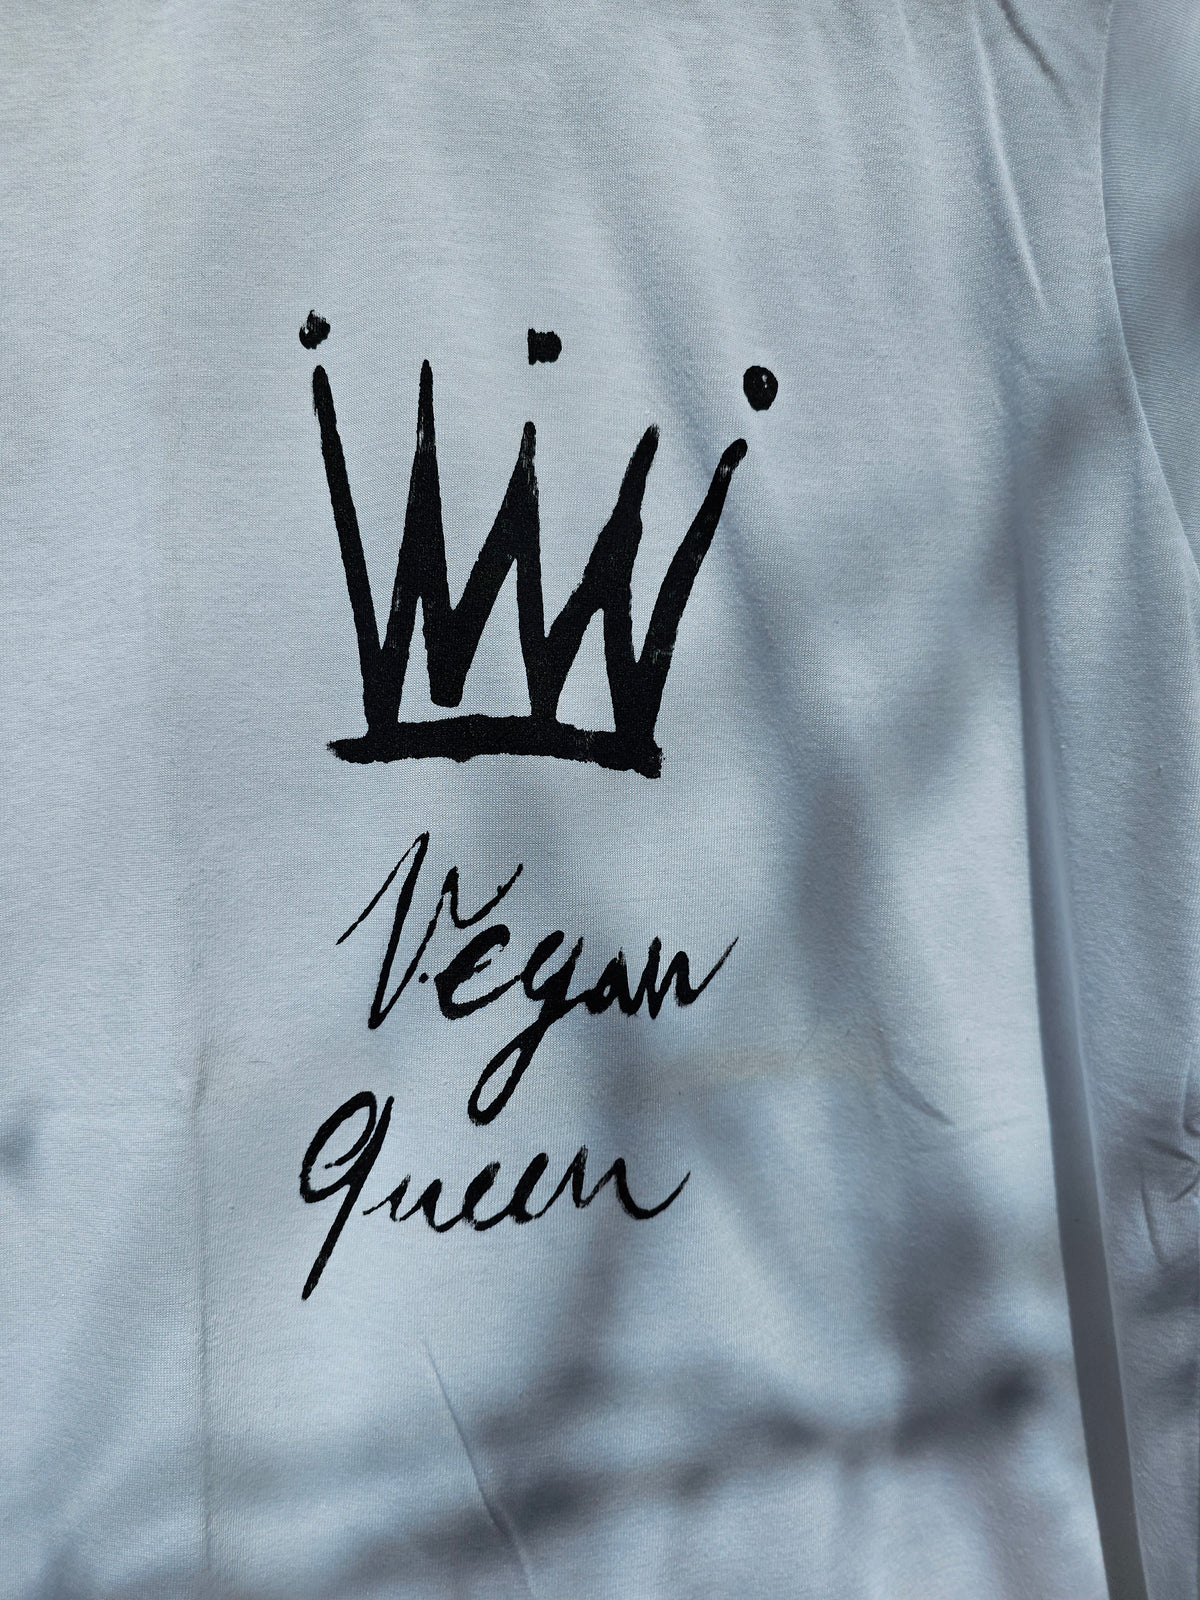 Vegan Queen with Crown T-shirt